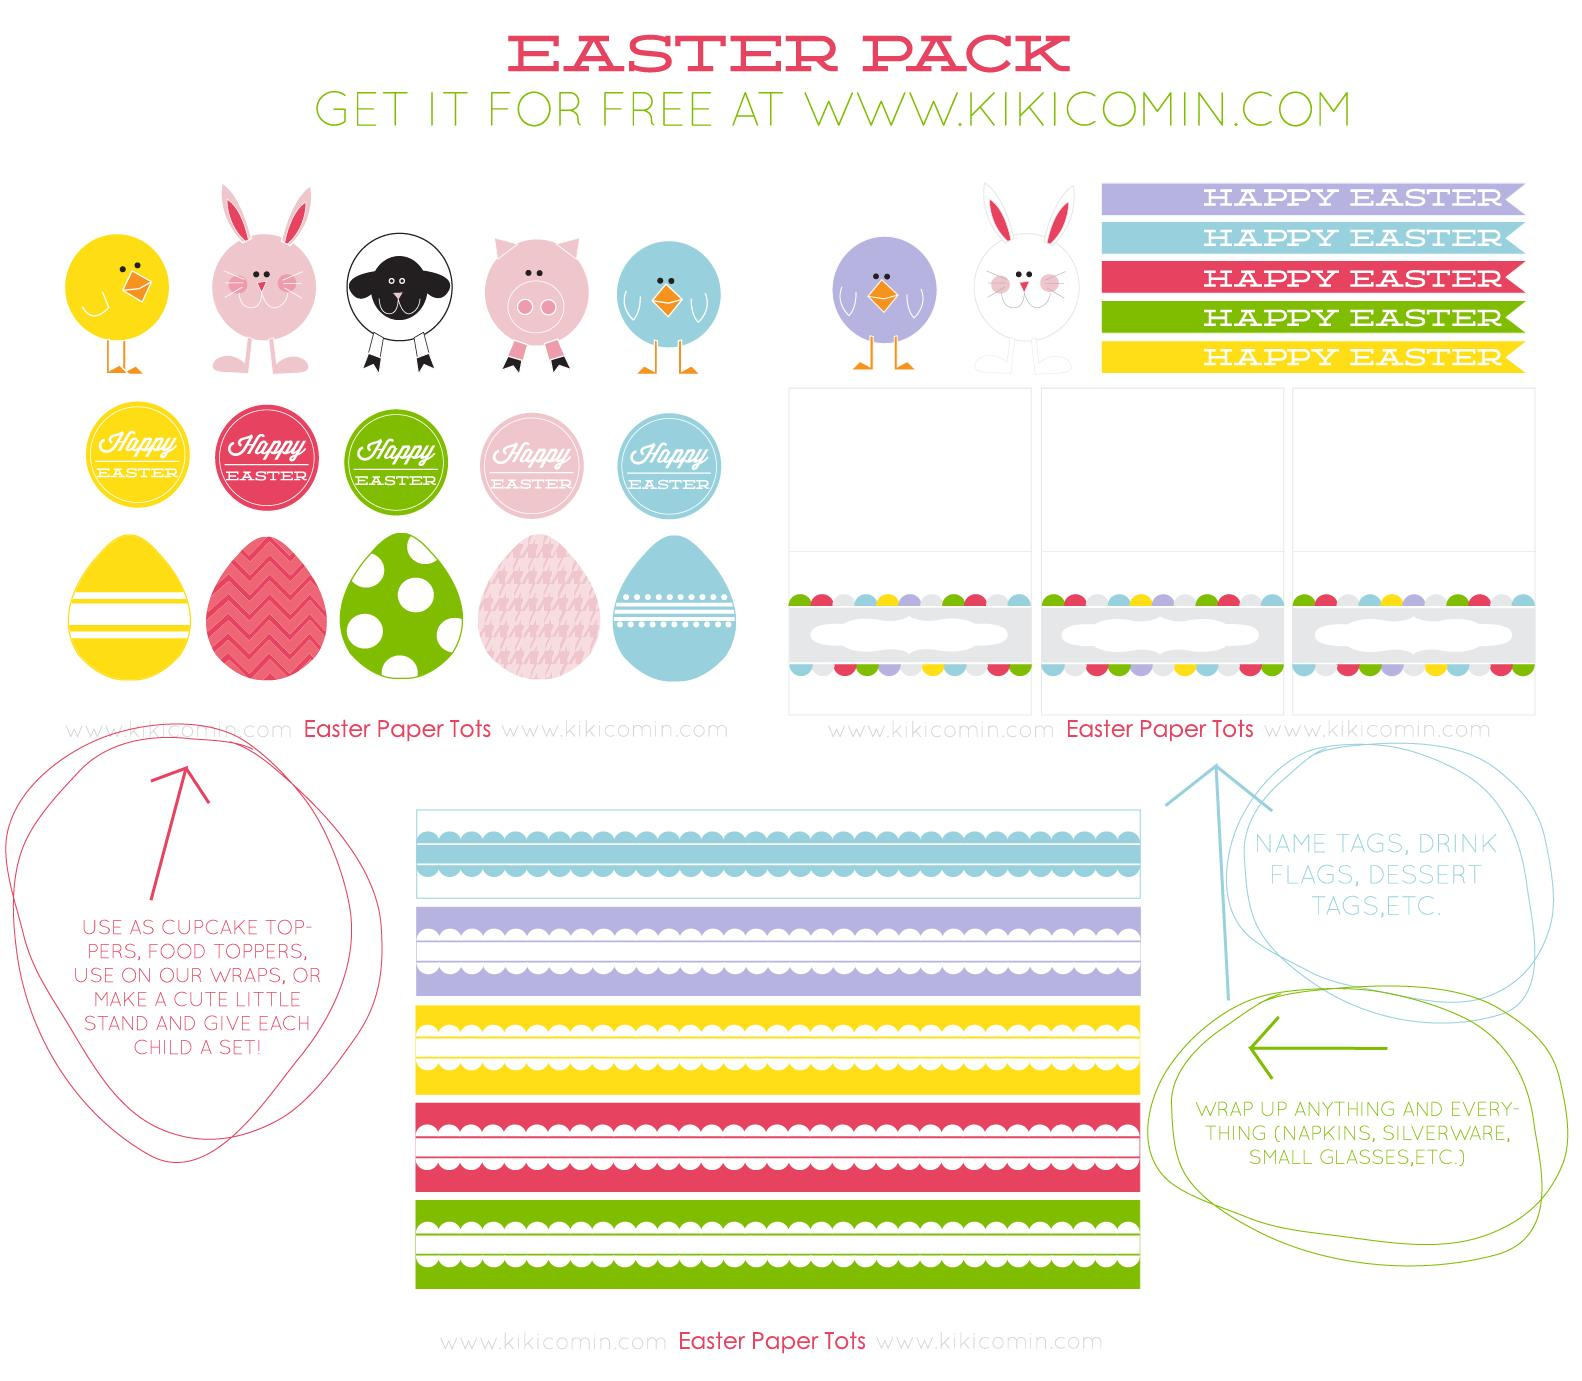 Free Printable Easter Basket Name Tags – Hd Easter Images - Free Printable Easter Basket Name Tags